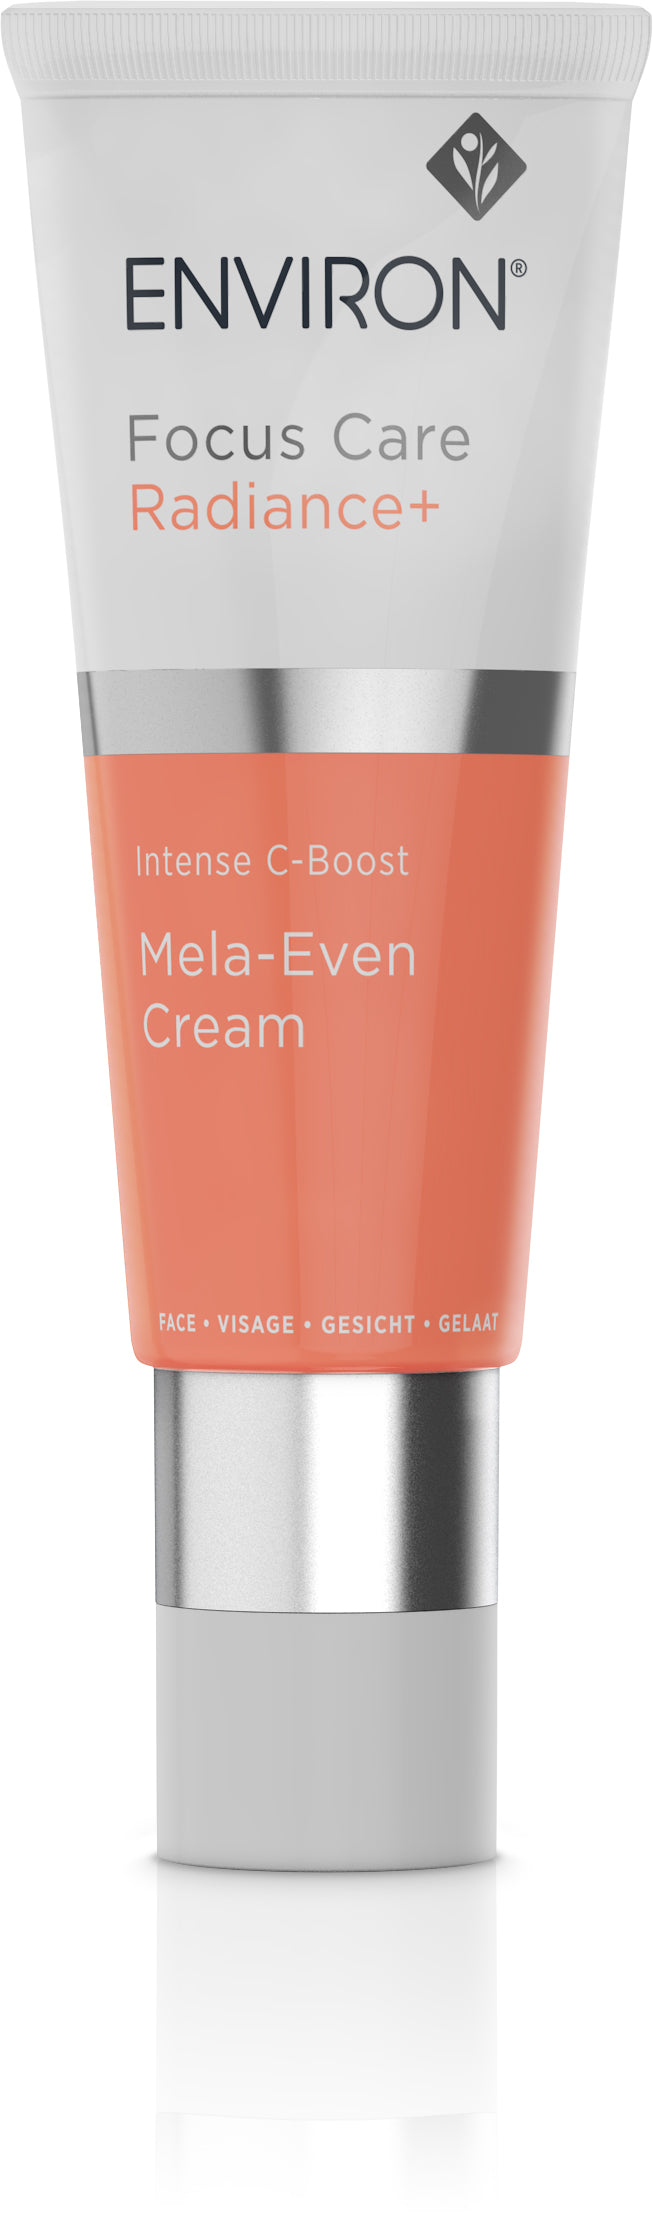 Environ Focus Care Radiance+ Mela-Even Cream